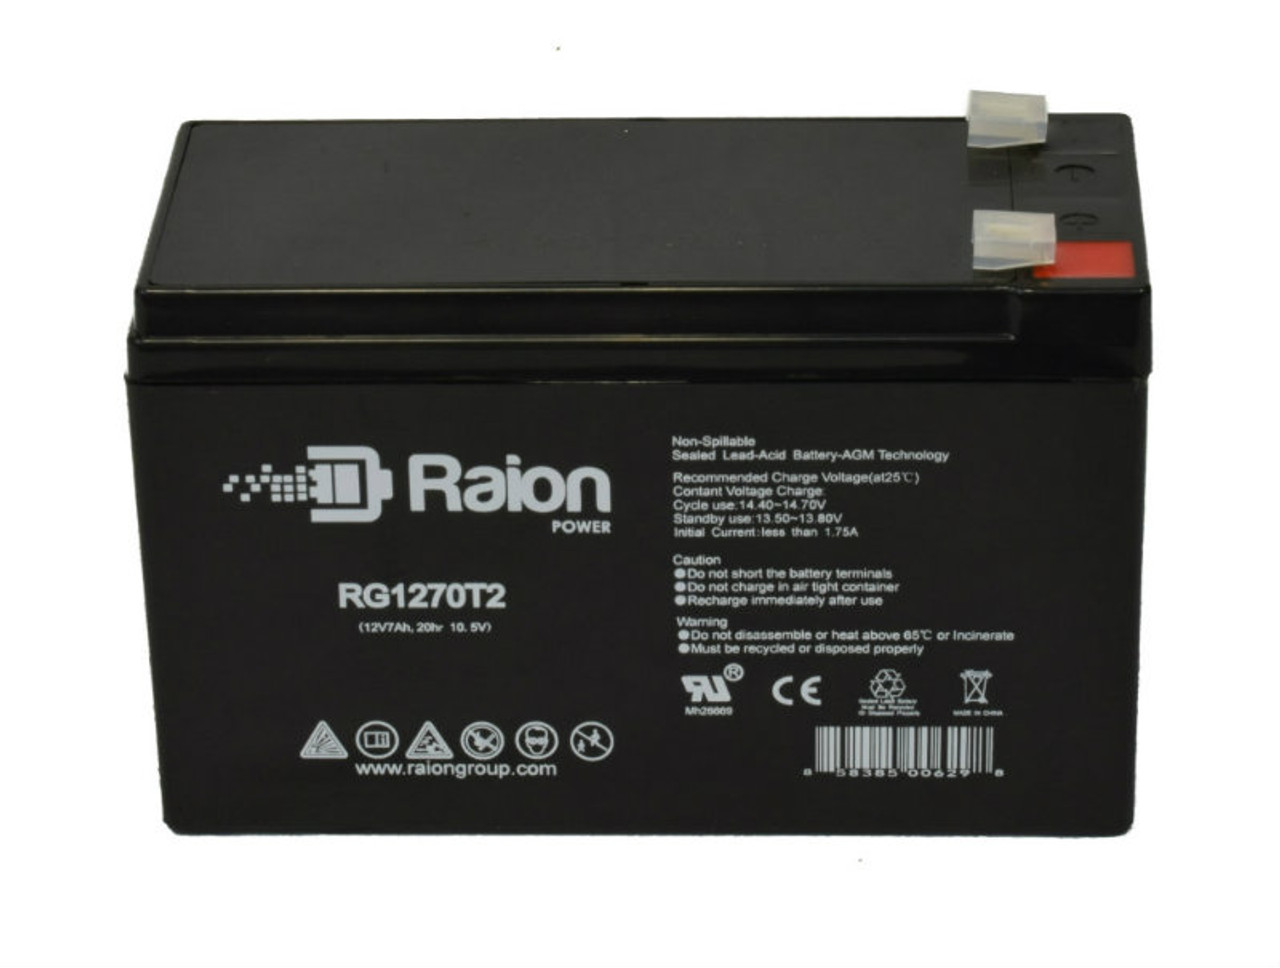 Raion Power RG1270T2 12V 7Ah Lead Acid Battery for Stannah Model 250 Straight Stairlift